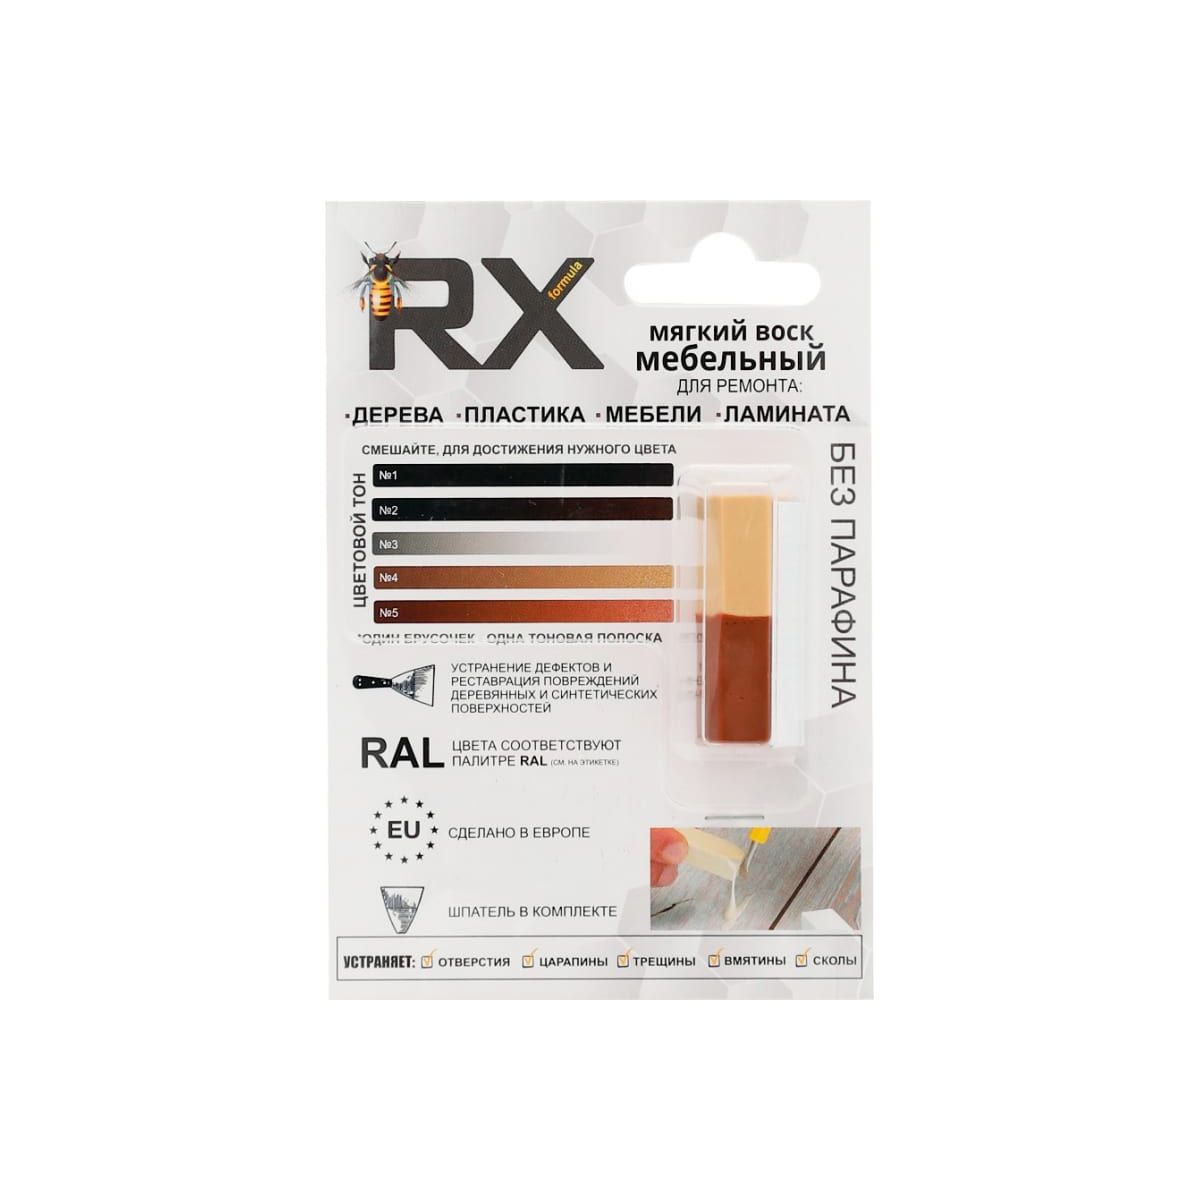 Воск мебельный RX Formula Медно-коричневый RAL 8004 + Бежево-красный RAL 3012 15 г воск мебельный rx formula венге ral 8019 15 г